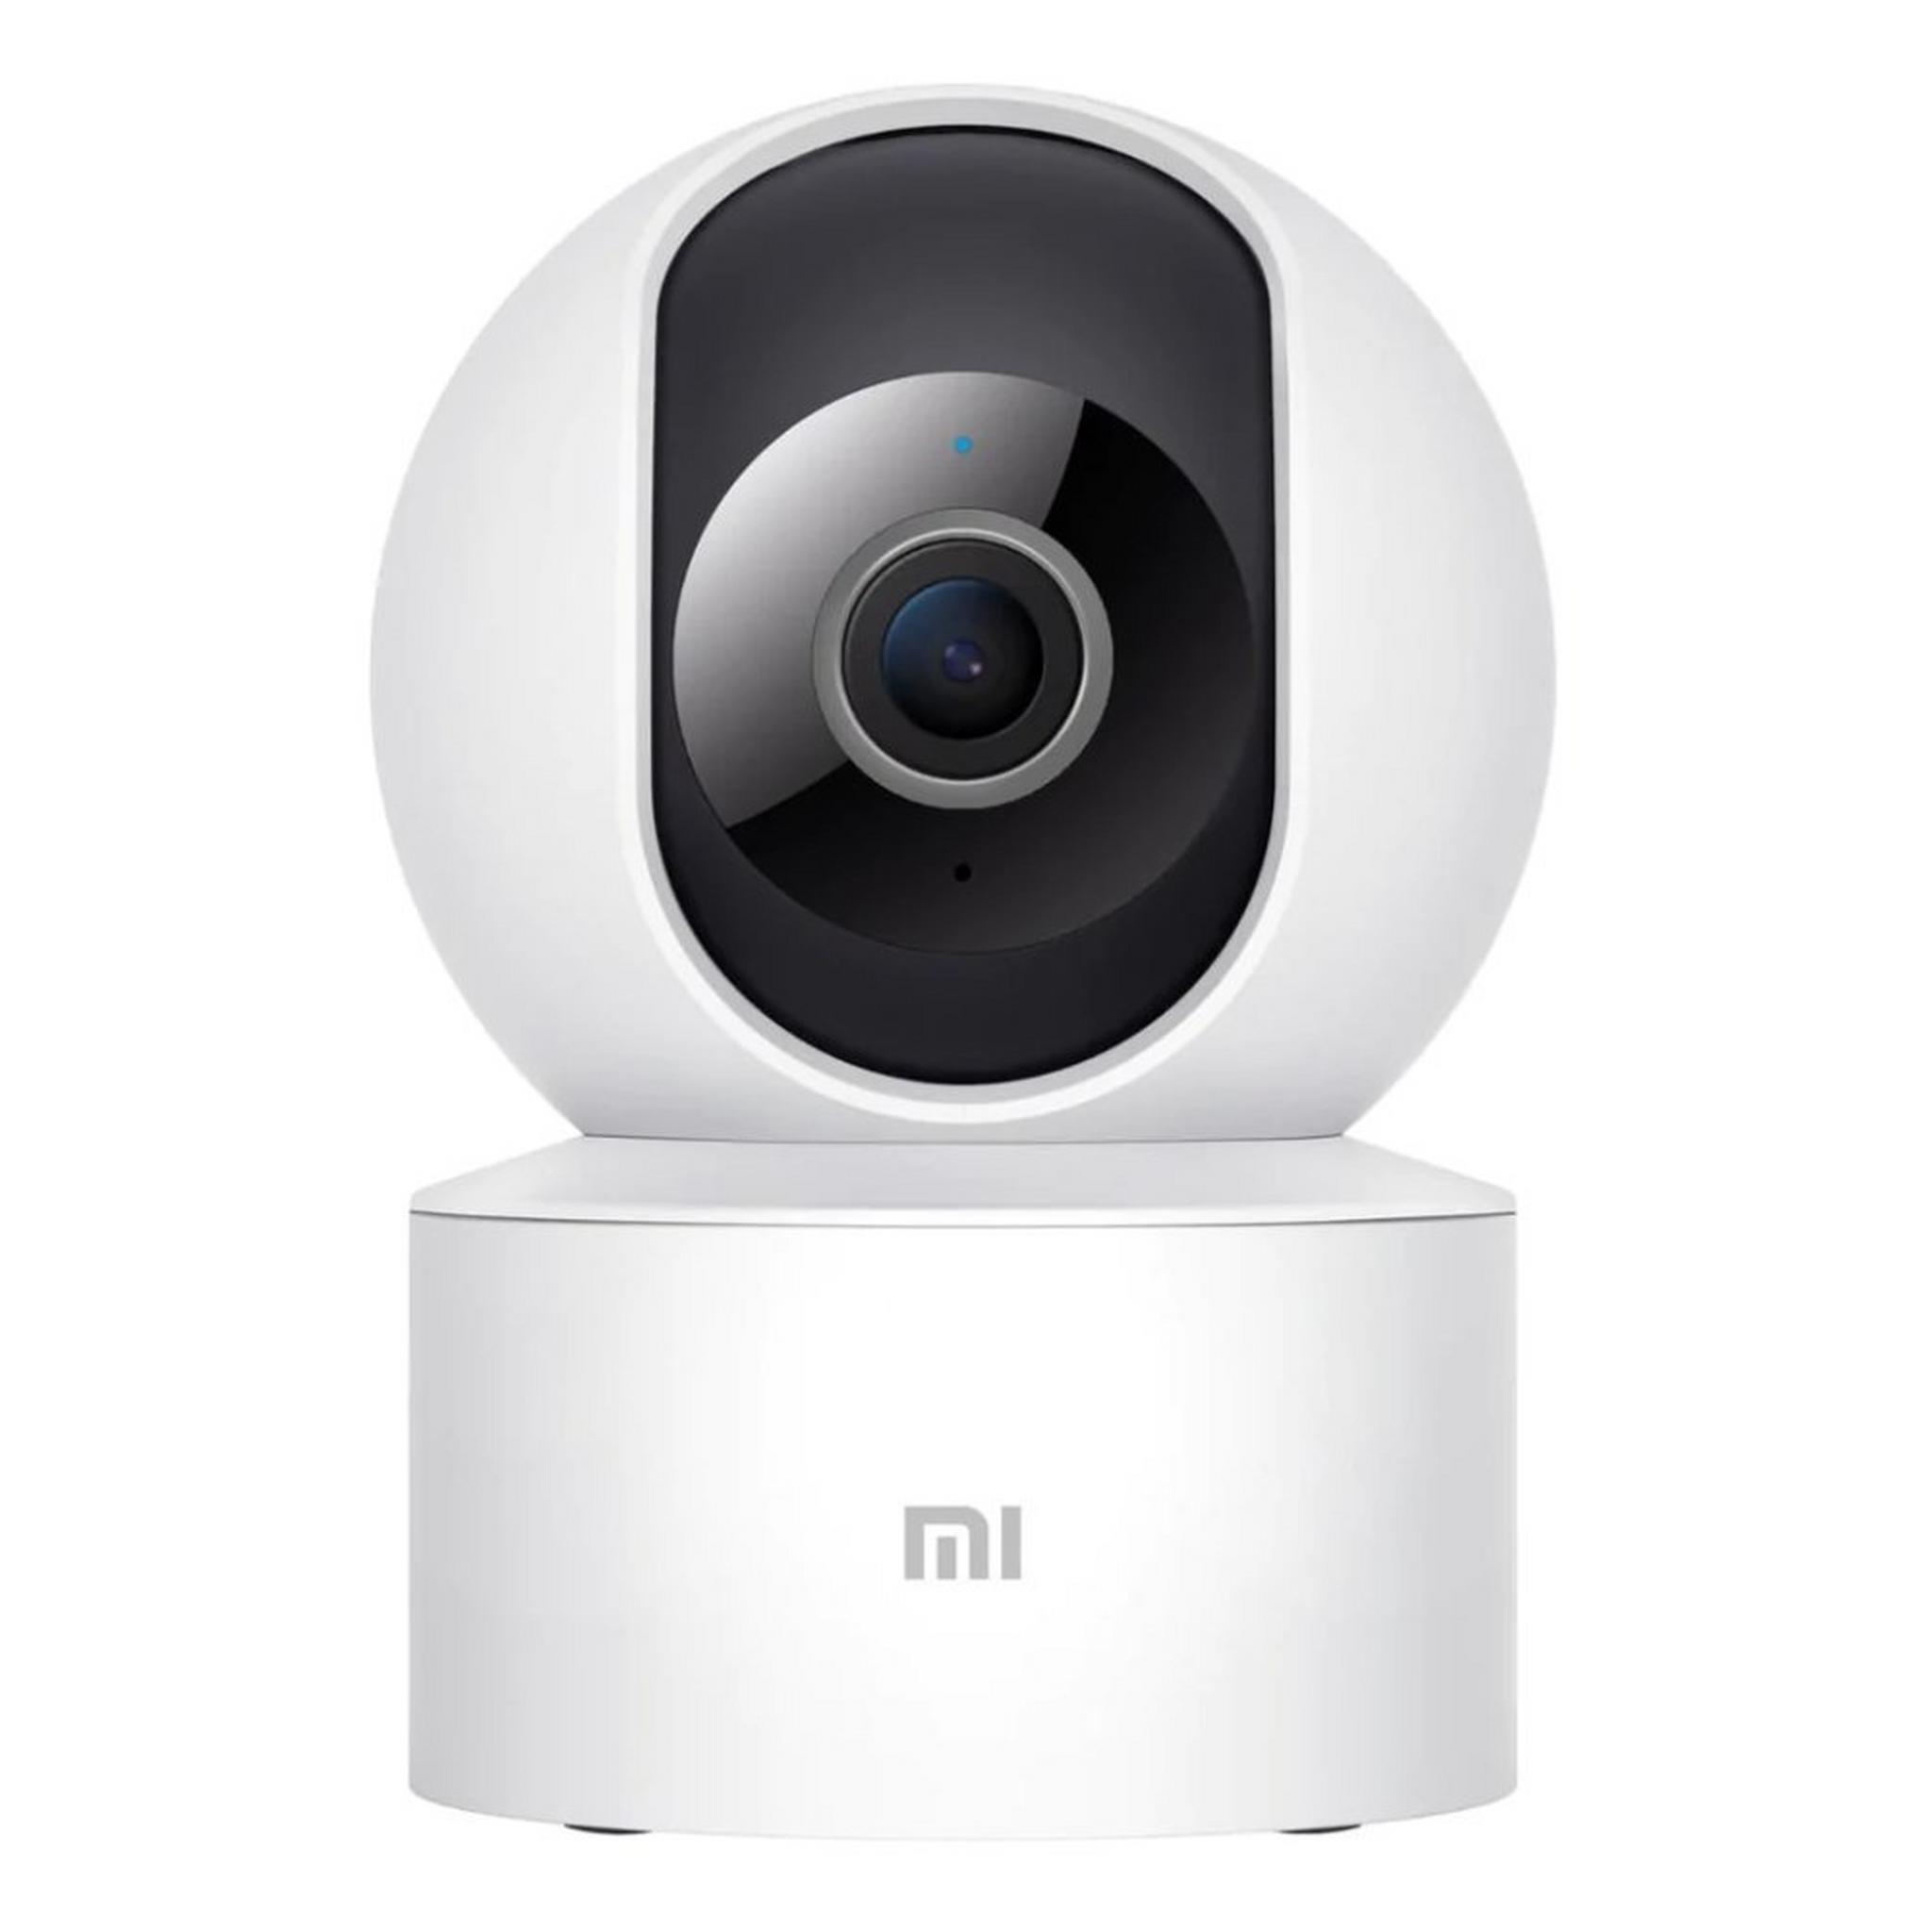 كاميرا المراقبة المنزلية شاومي مي 360 درجة بدقة 1080 بيكسل (MJSXJ10CM)